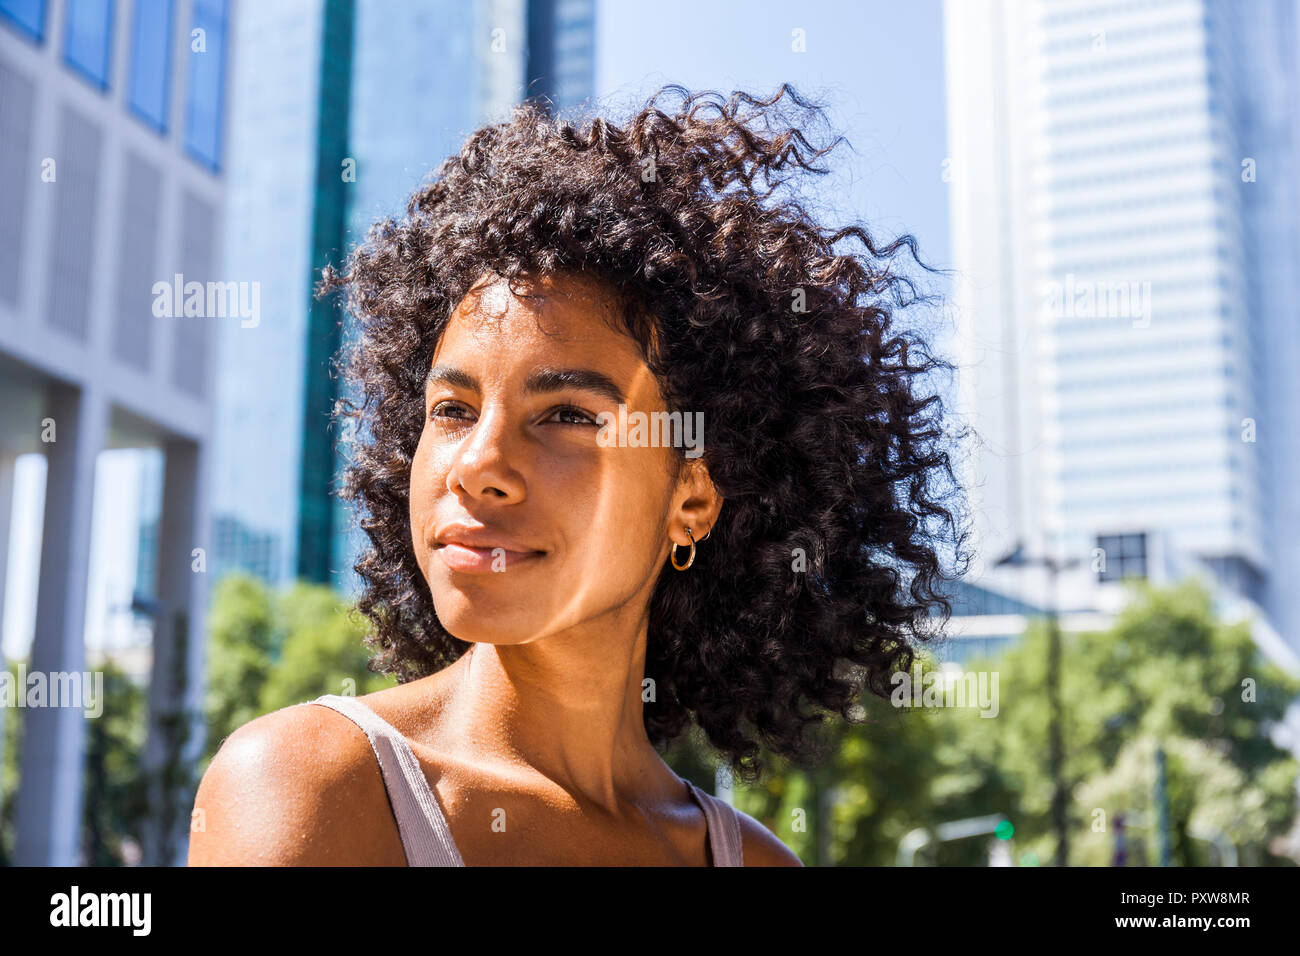 Allemagne, Francfort, portrait of content jeune femme avec des cheveux bouclés Banque D'Images